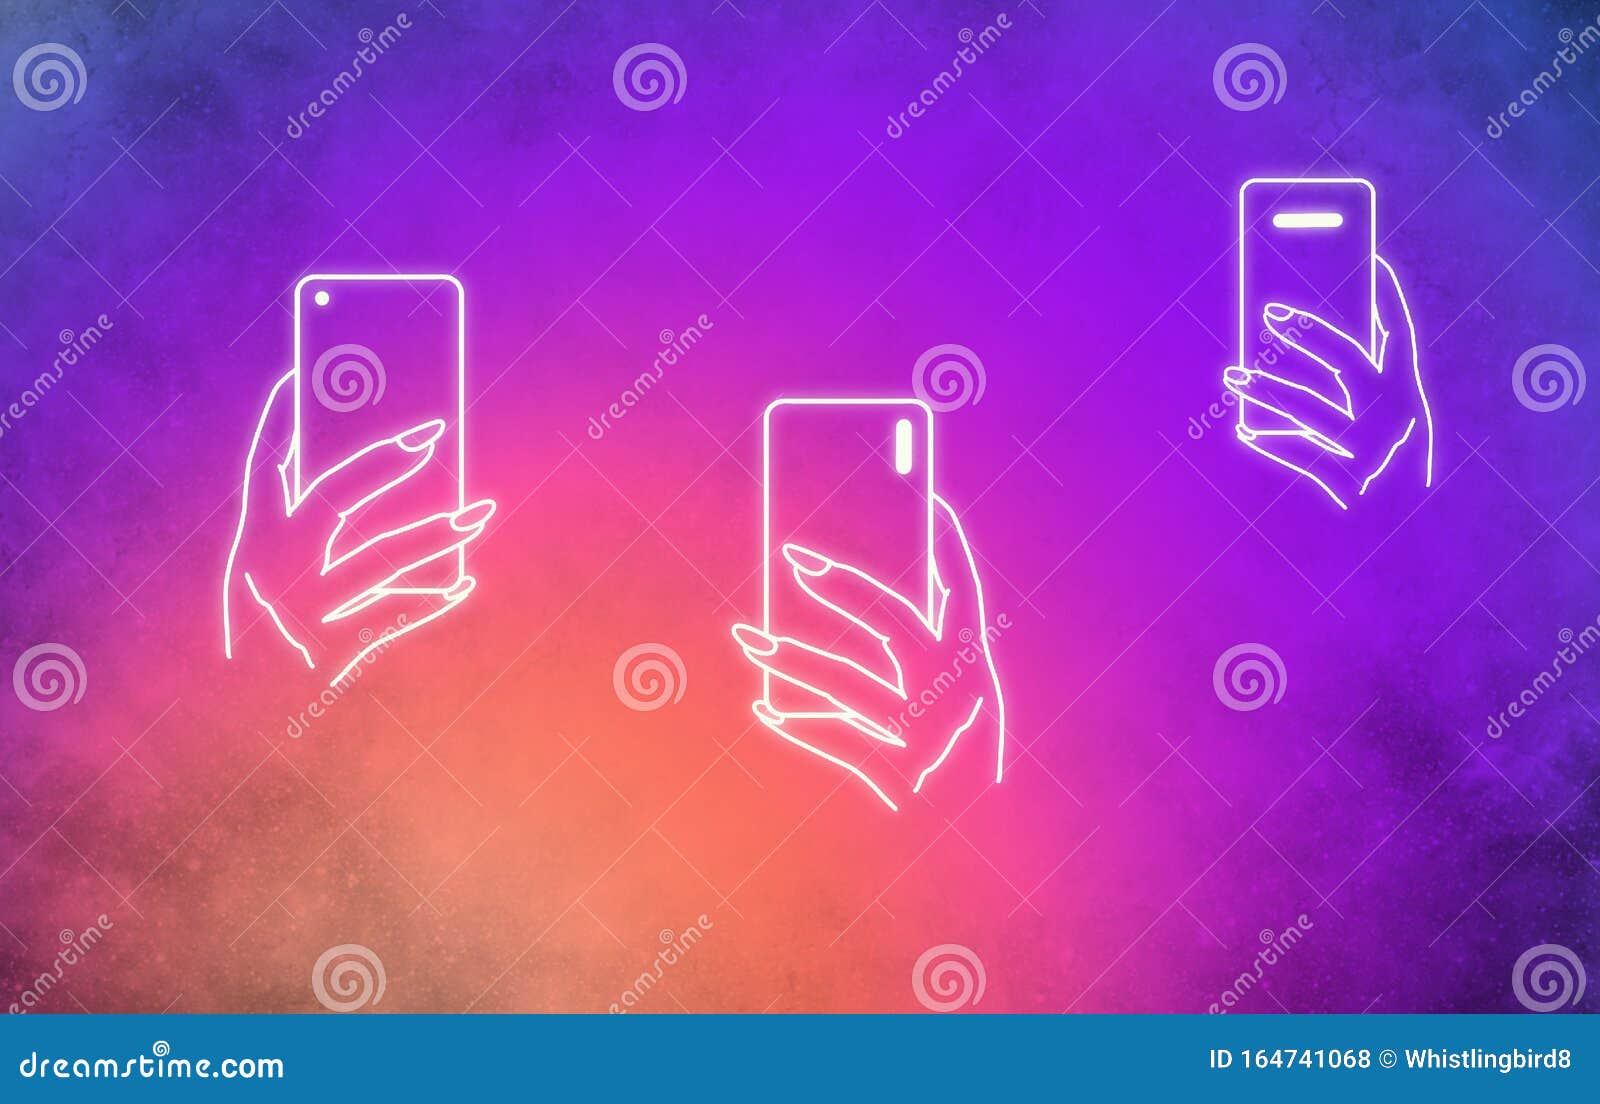 手绘手机成瘾影响者库存例证 插画包括有电话 上色 现有量 例证 蓝色 粉红色 墙纸